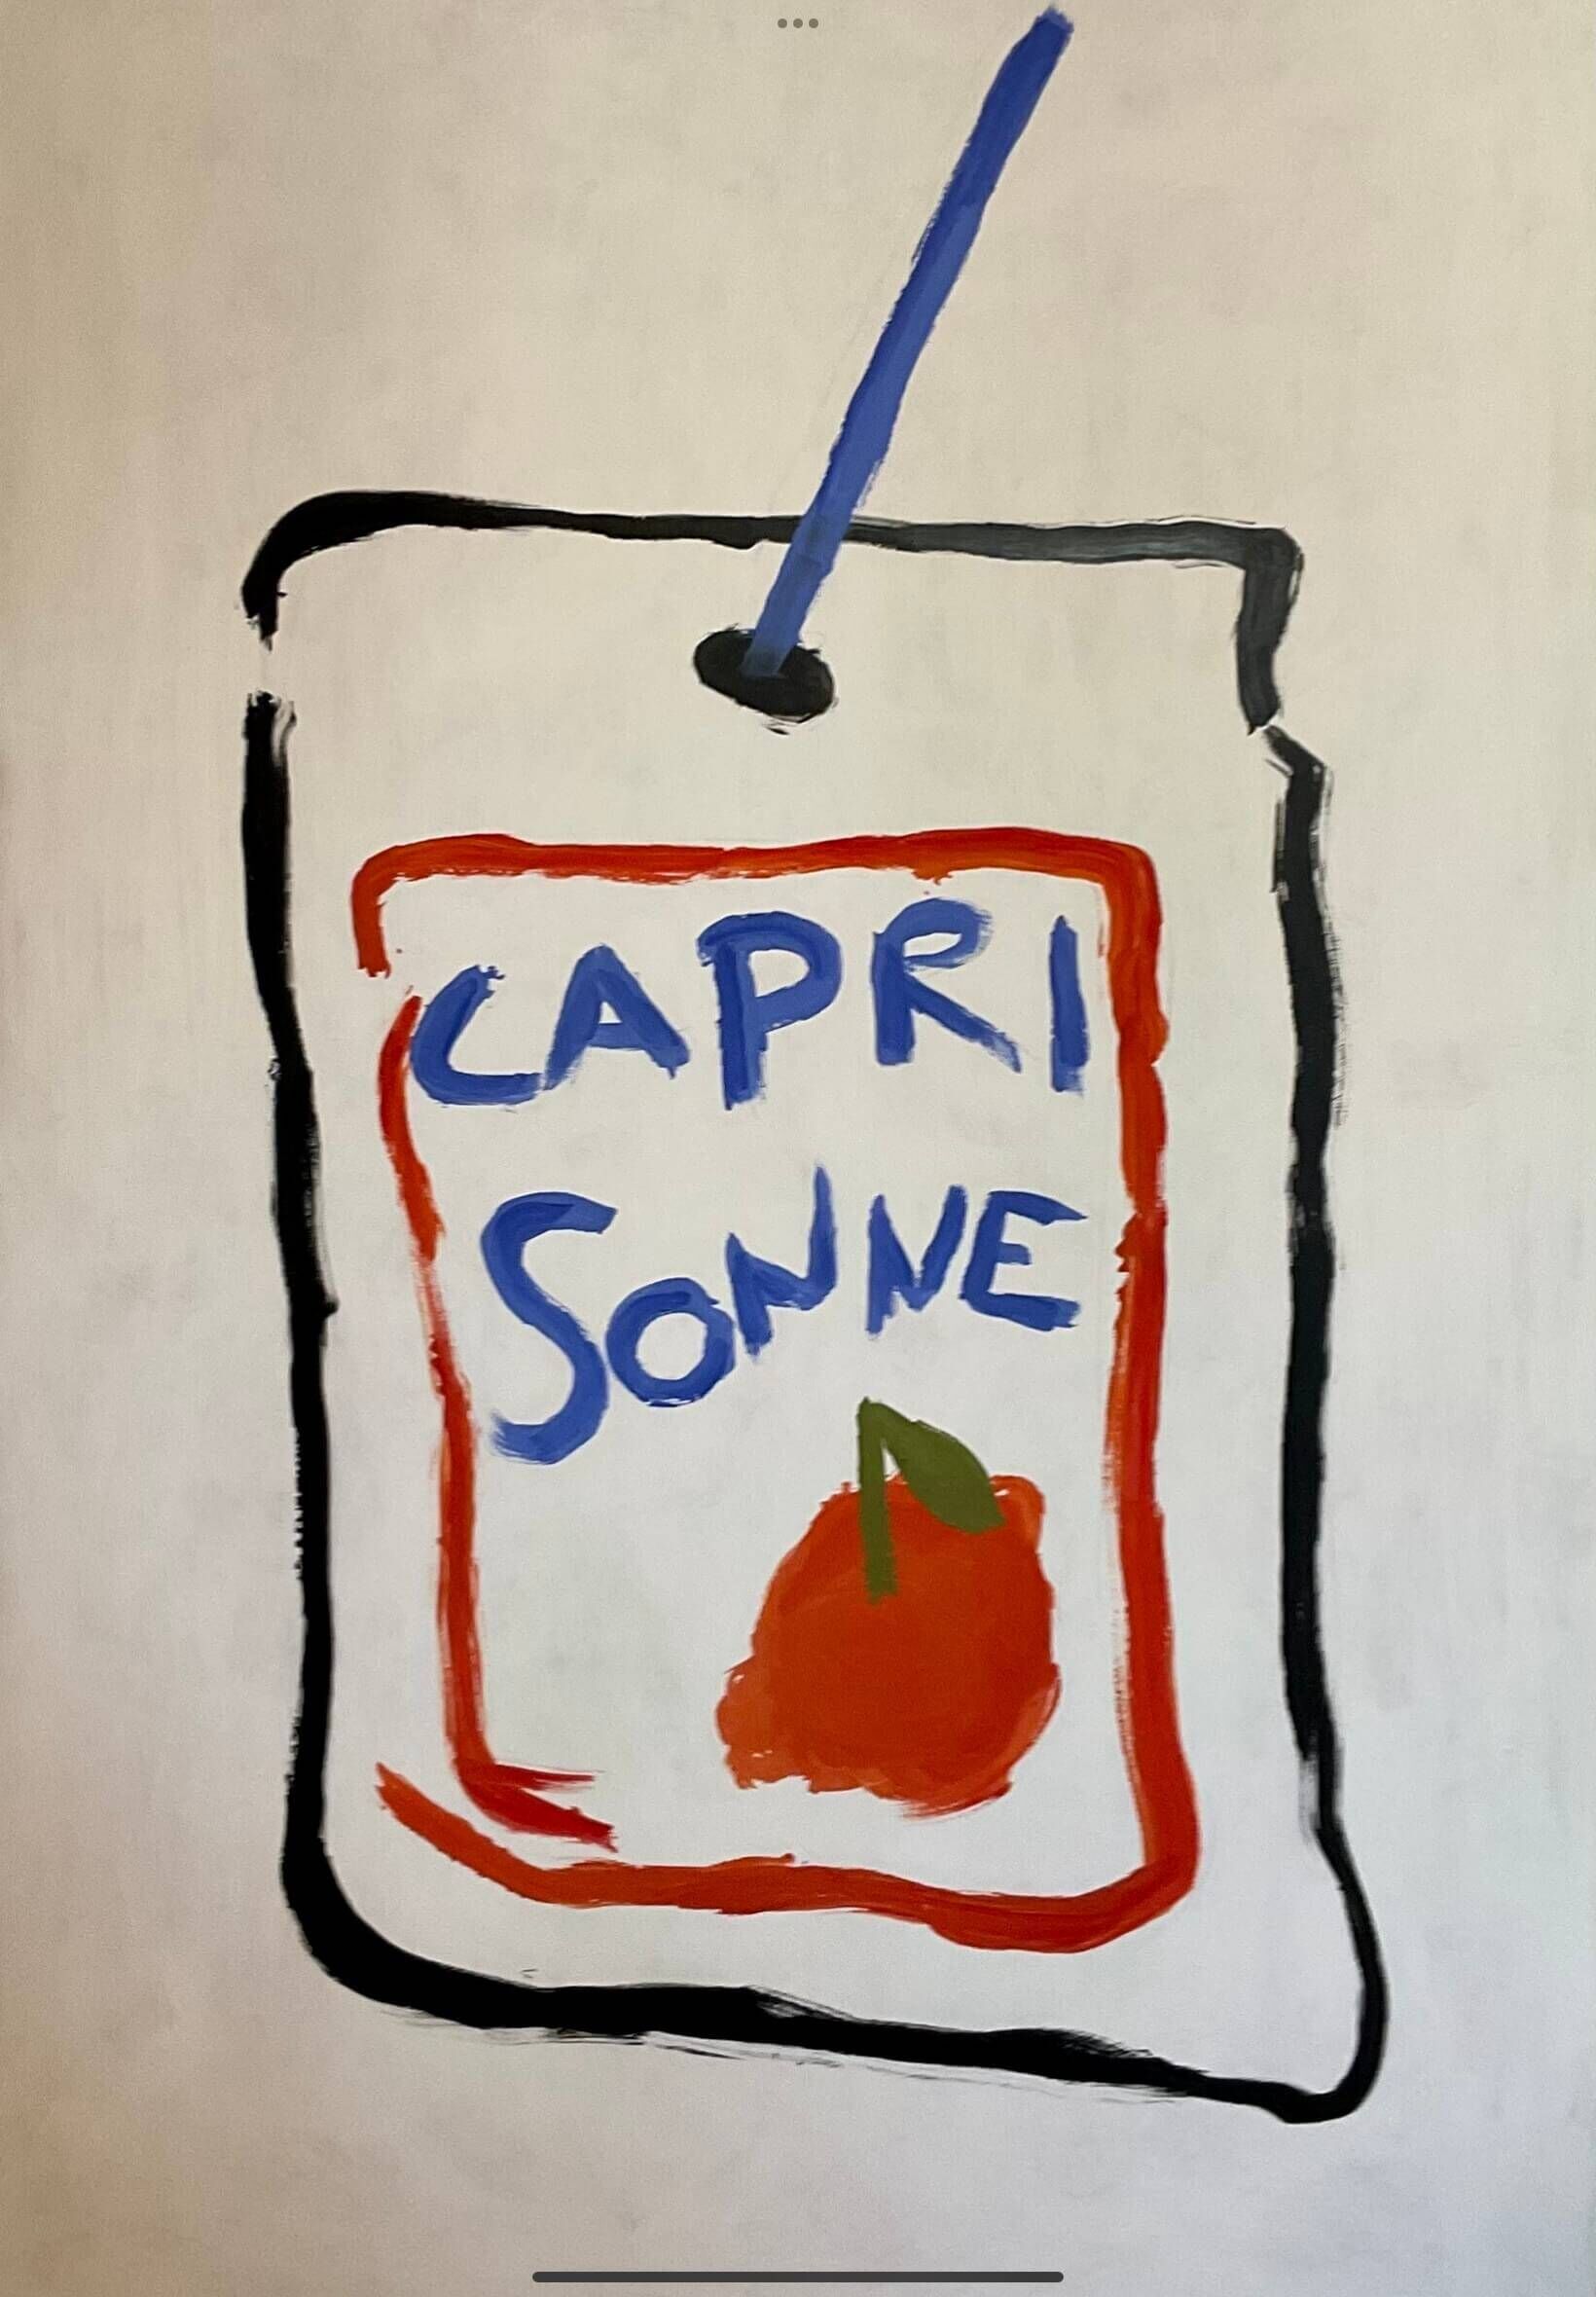 Capri Sonne